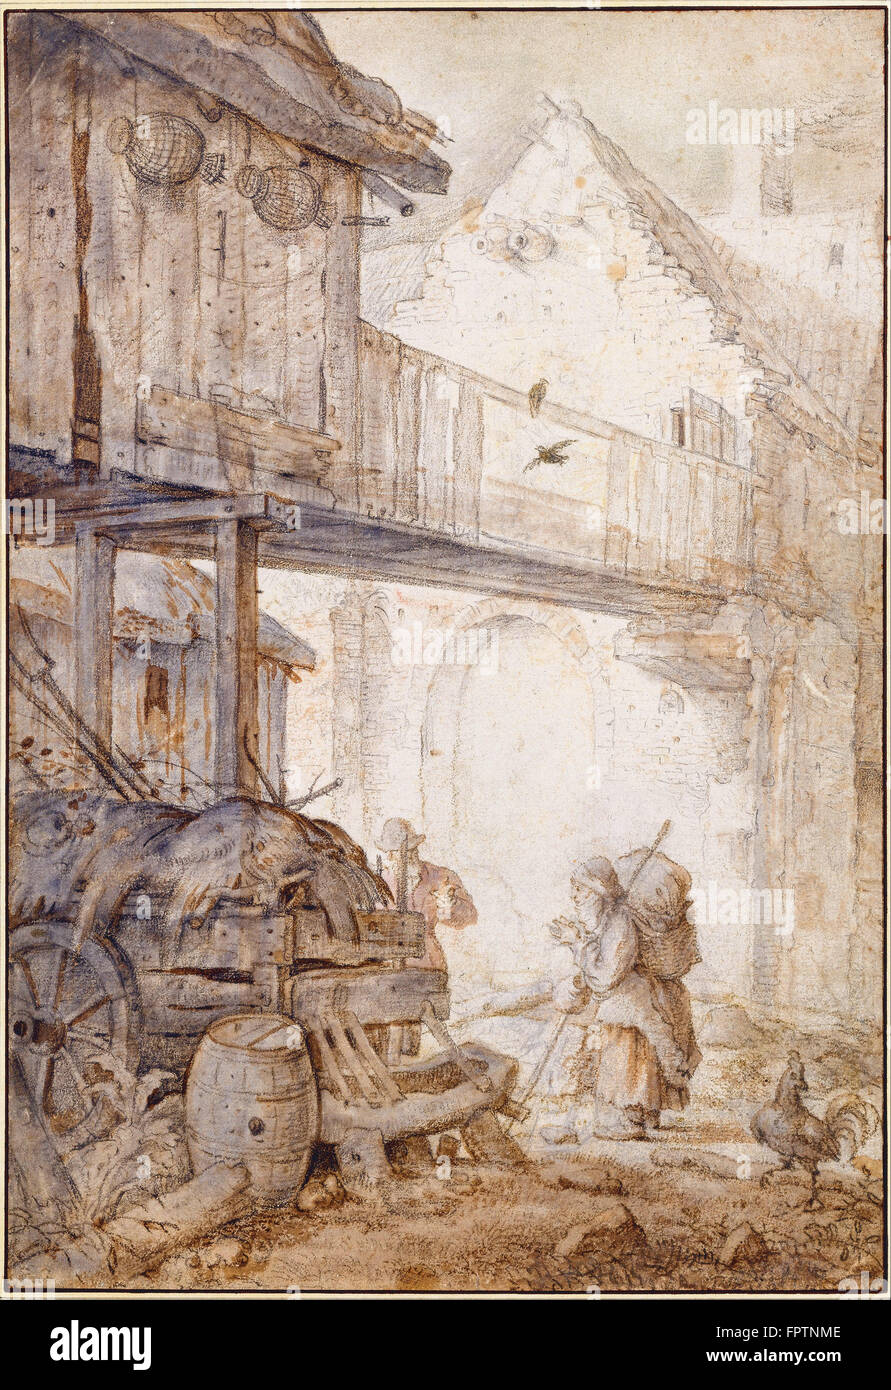 Roelant Savery - cour avec l'abandon d'un mendiant Femme - ch. 1608 Banque D'Images